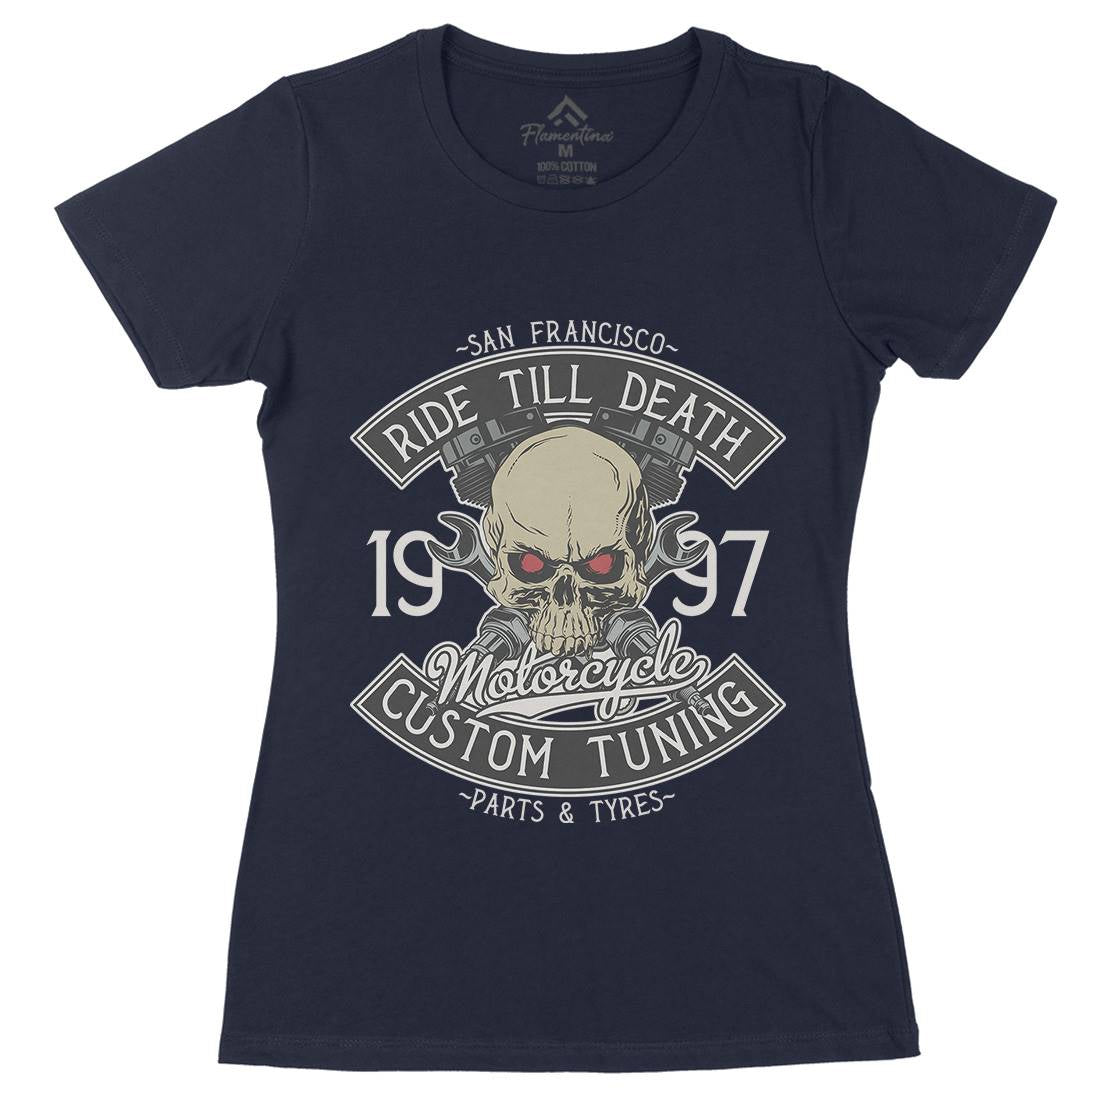 Ride Till Death Womens Organic Crew Neck T-Shirt Motorcycles D963